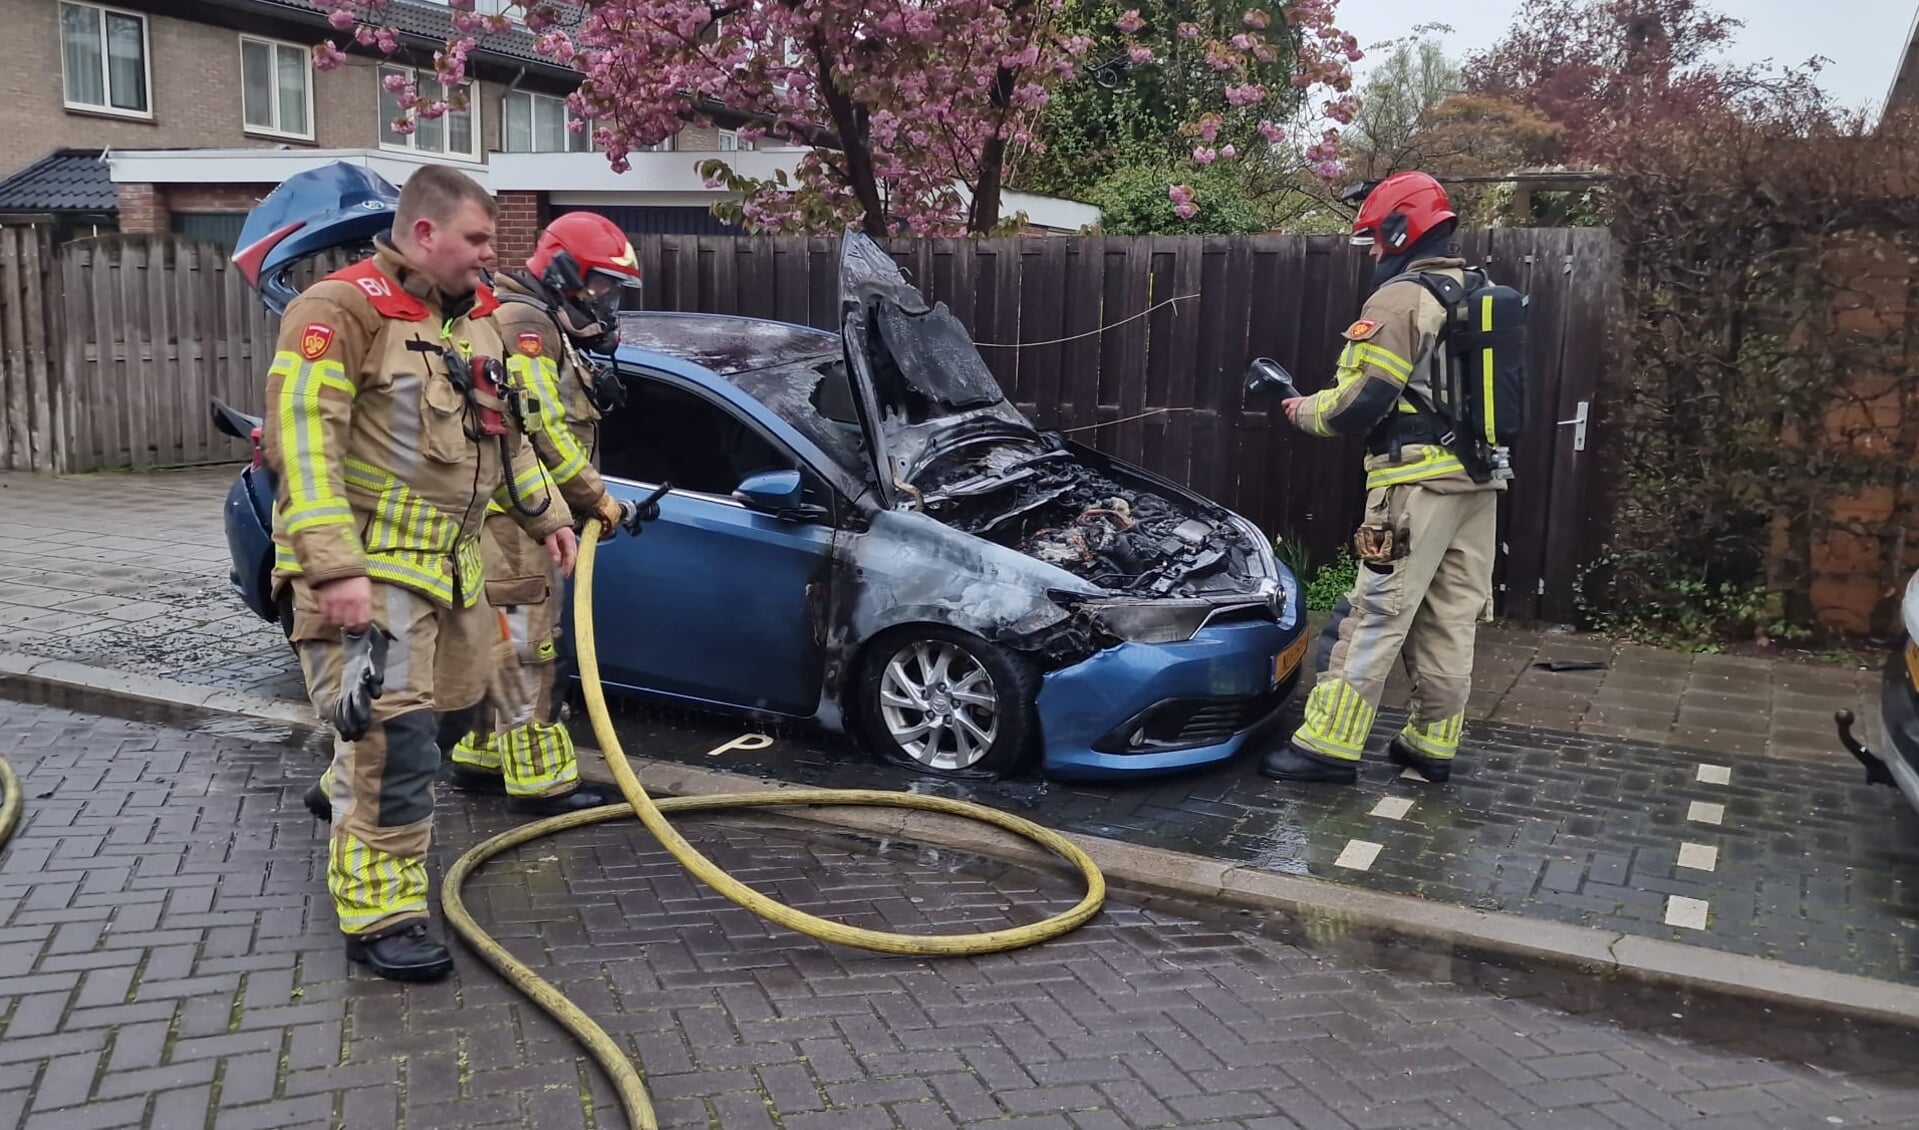 Detecteren Ontvangende machine knelpunt Auto in brand gestoken in Zaandam, fles spiritus aangetroffen | Al het  nieuws uit Zaanstad